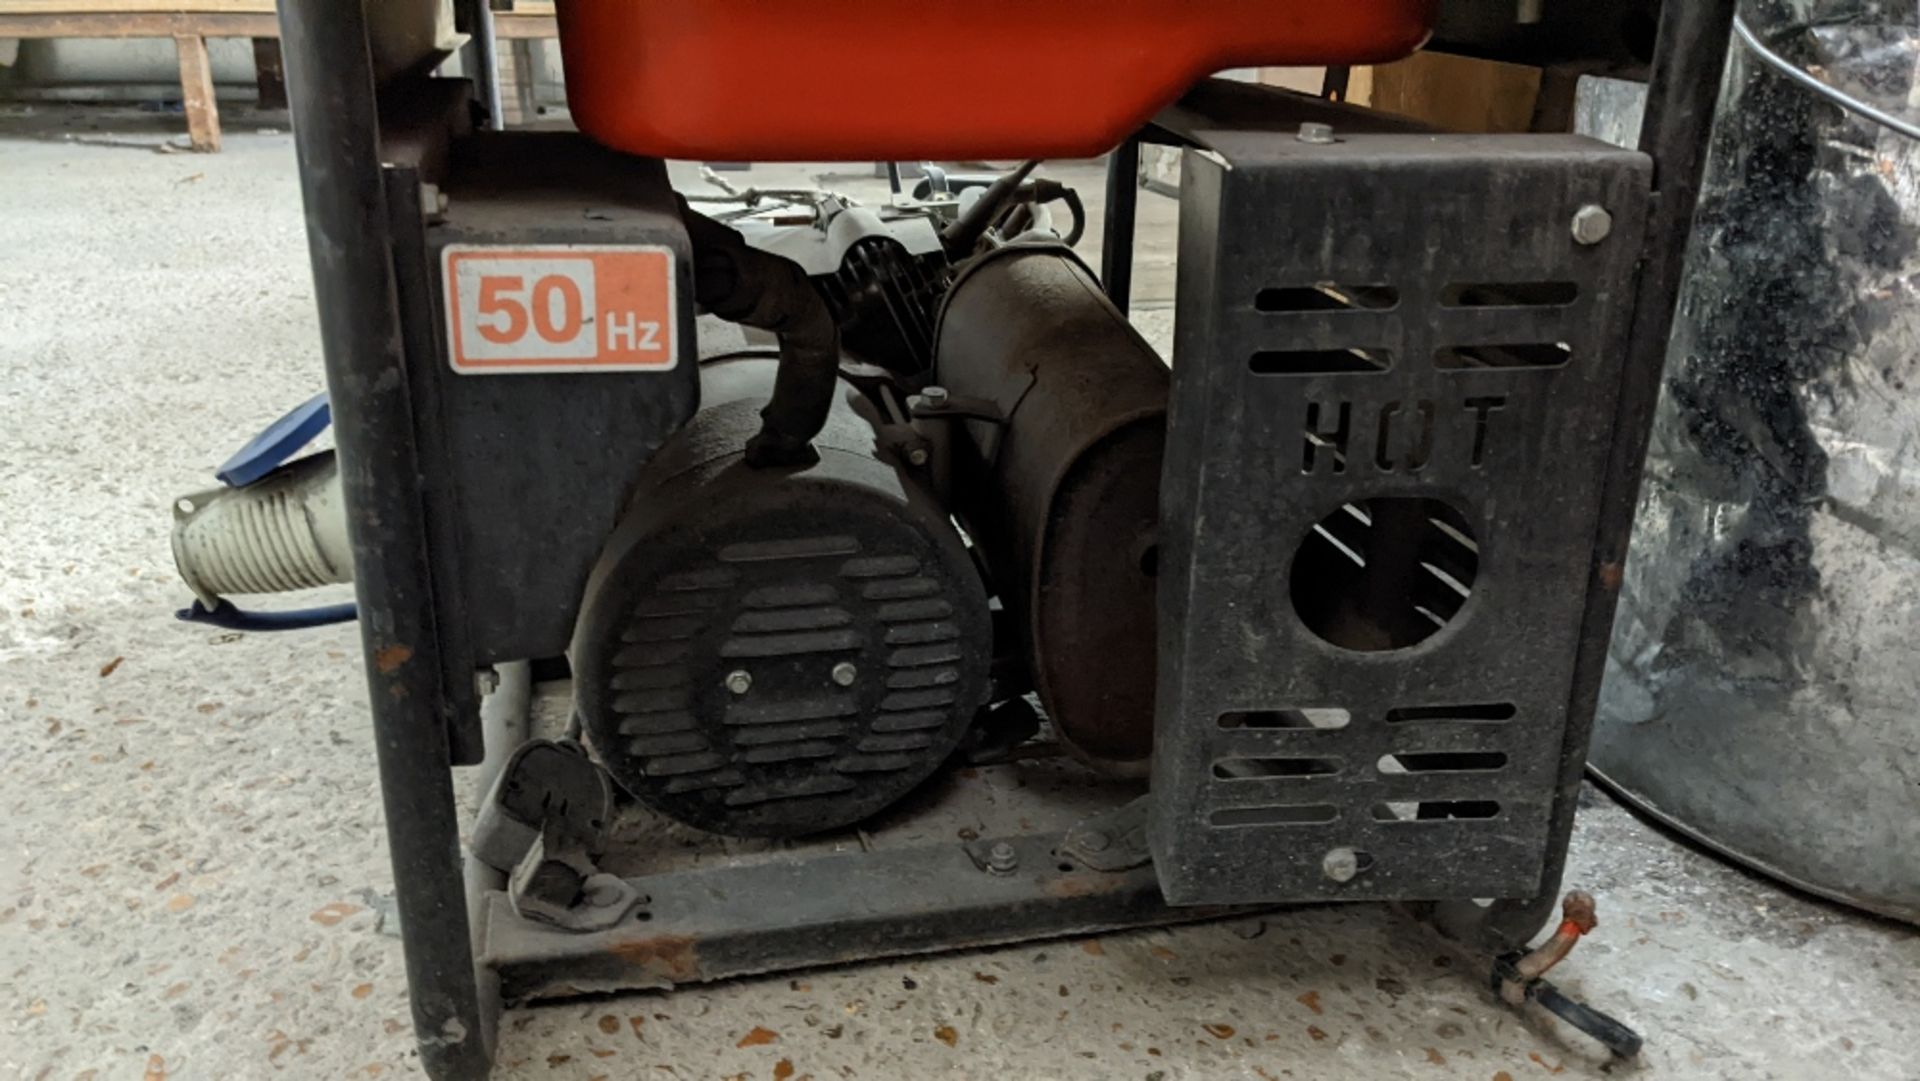 SANLI GS 2400 Petrol Generator for Spares or Repairs - Image 4 of 4